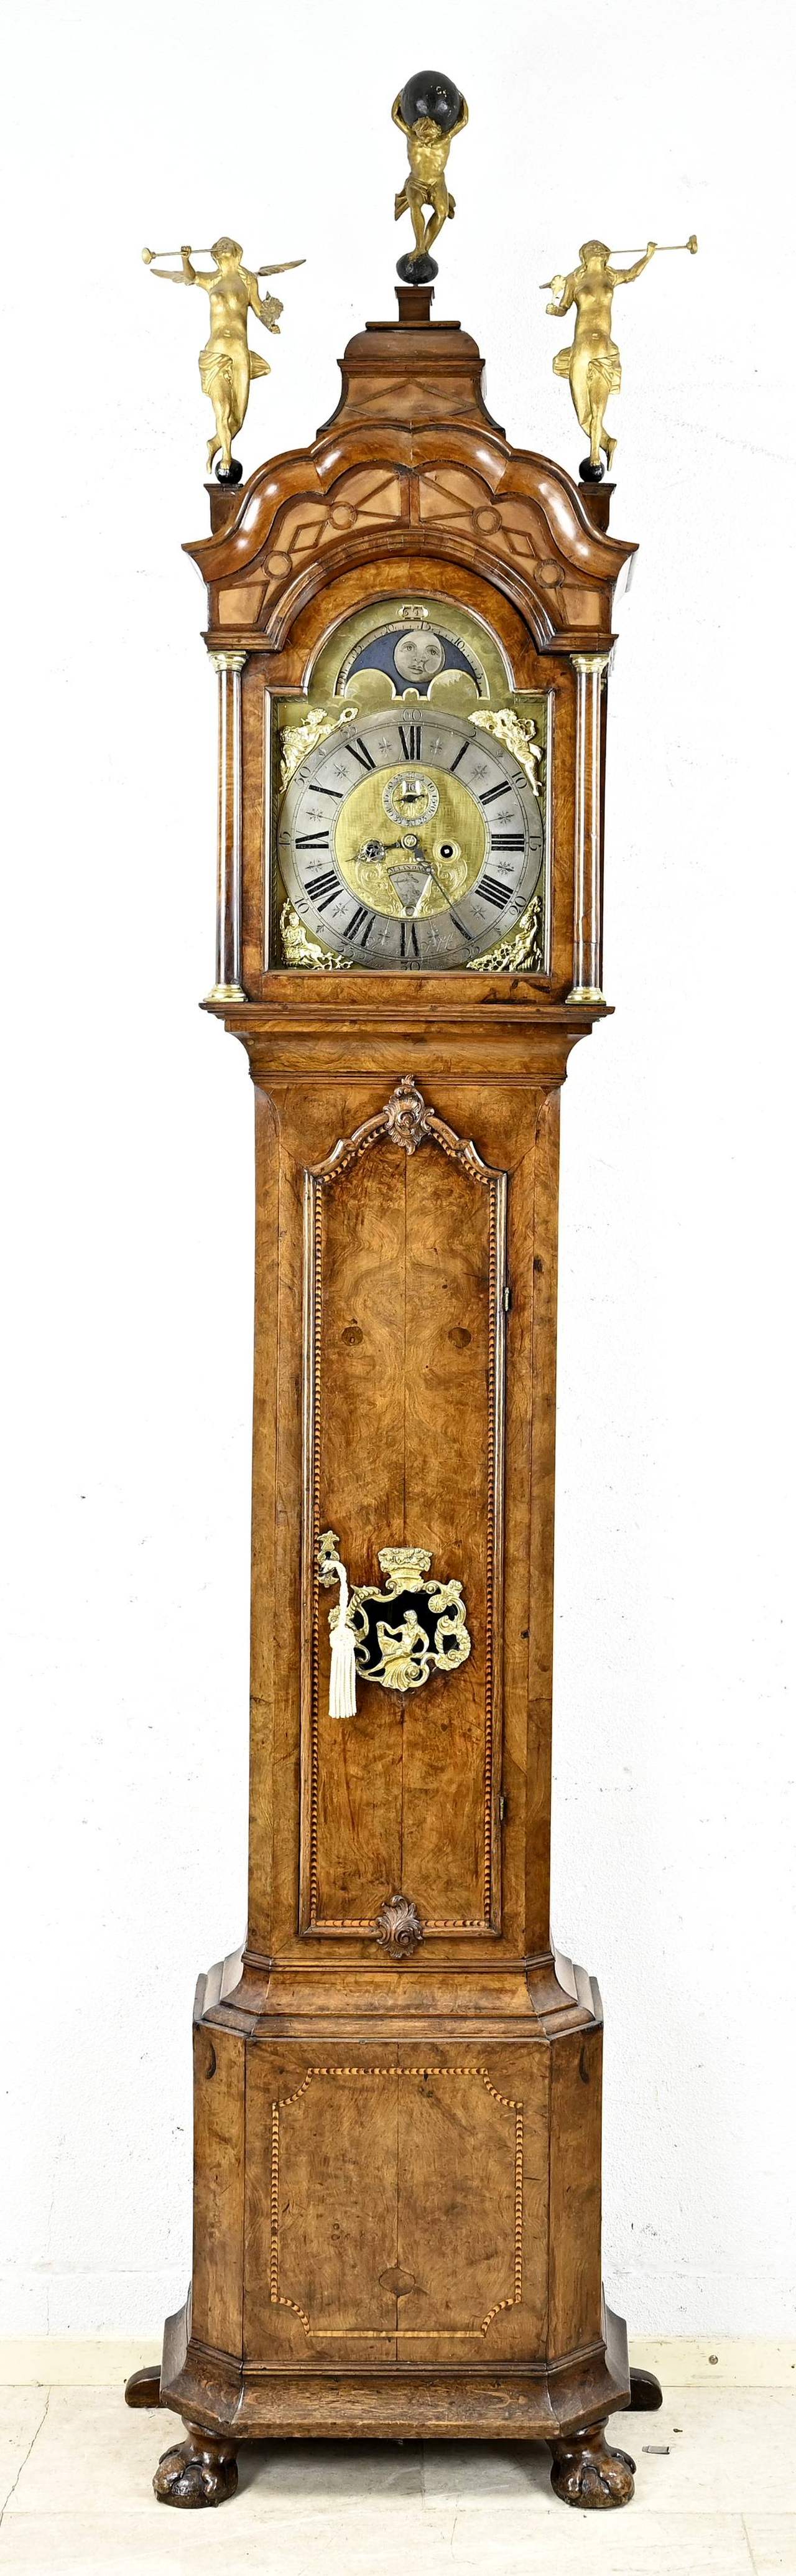 Engels staand horloge, H 270 cm.